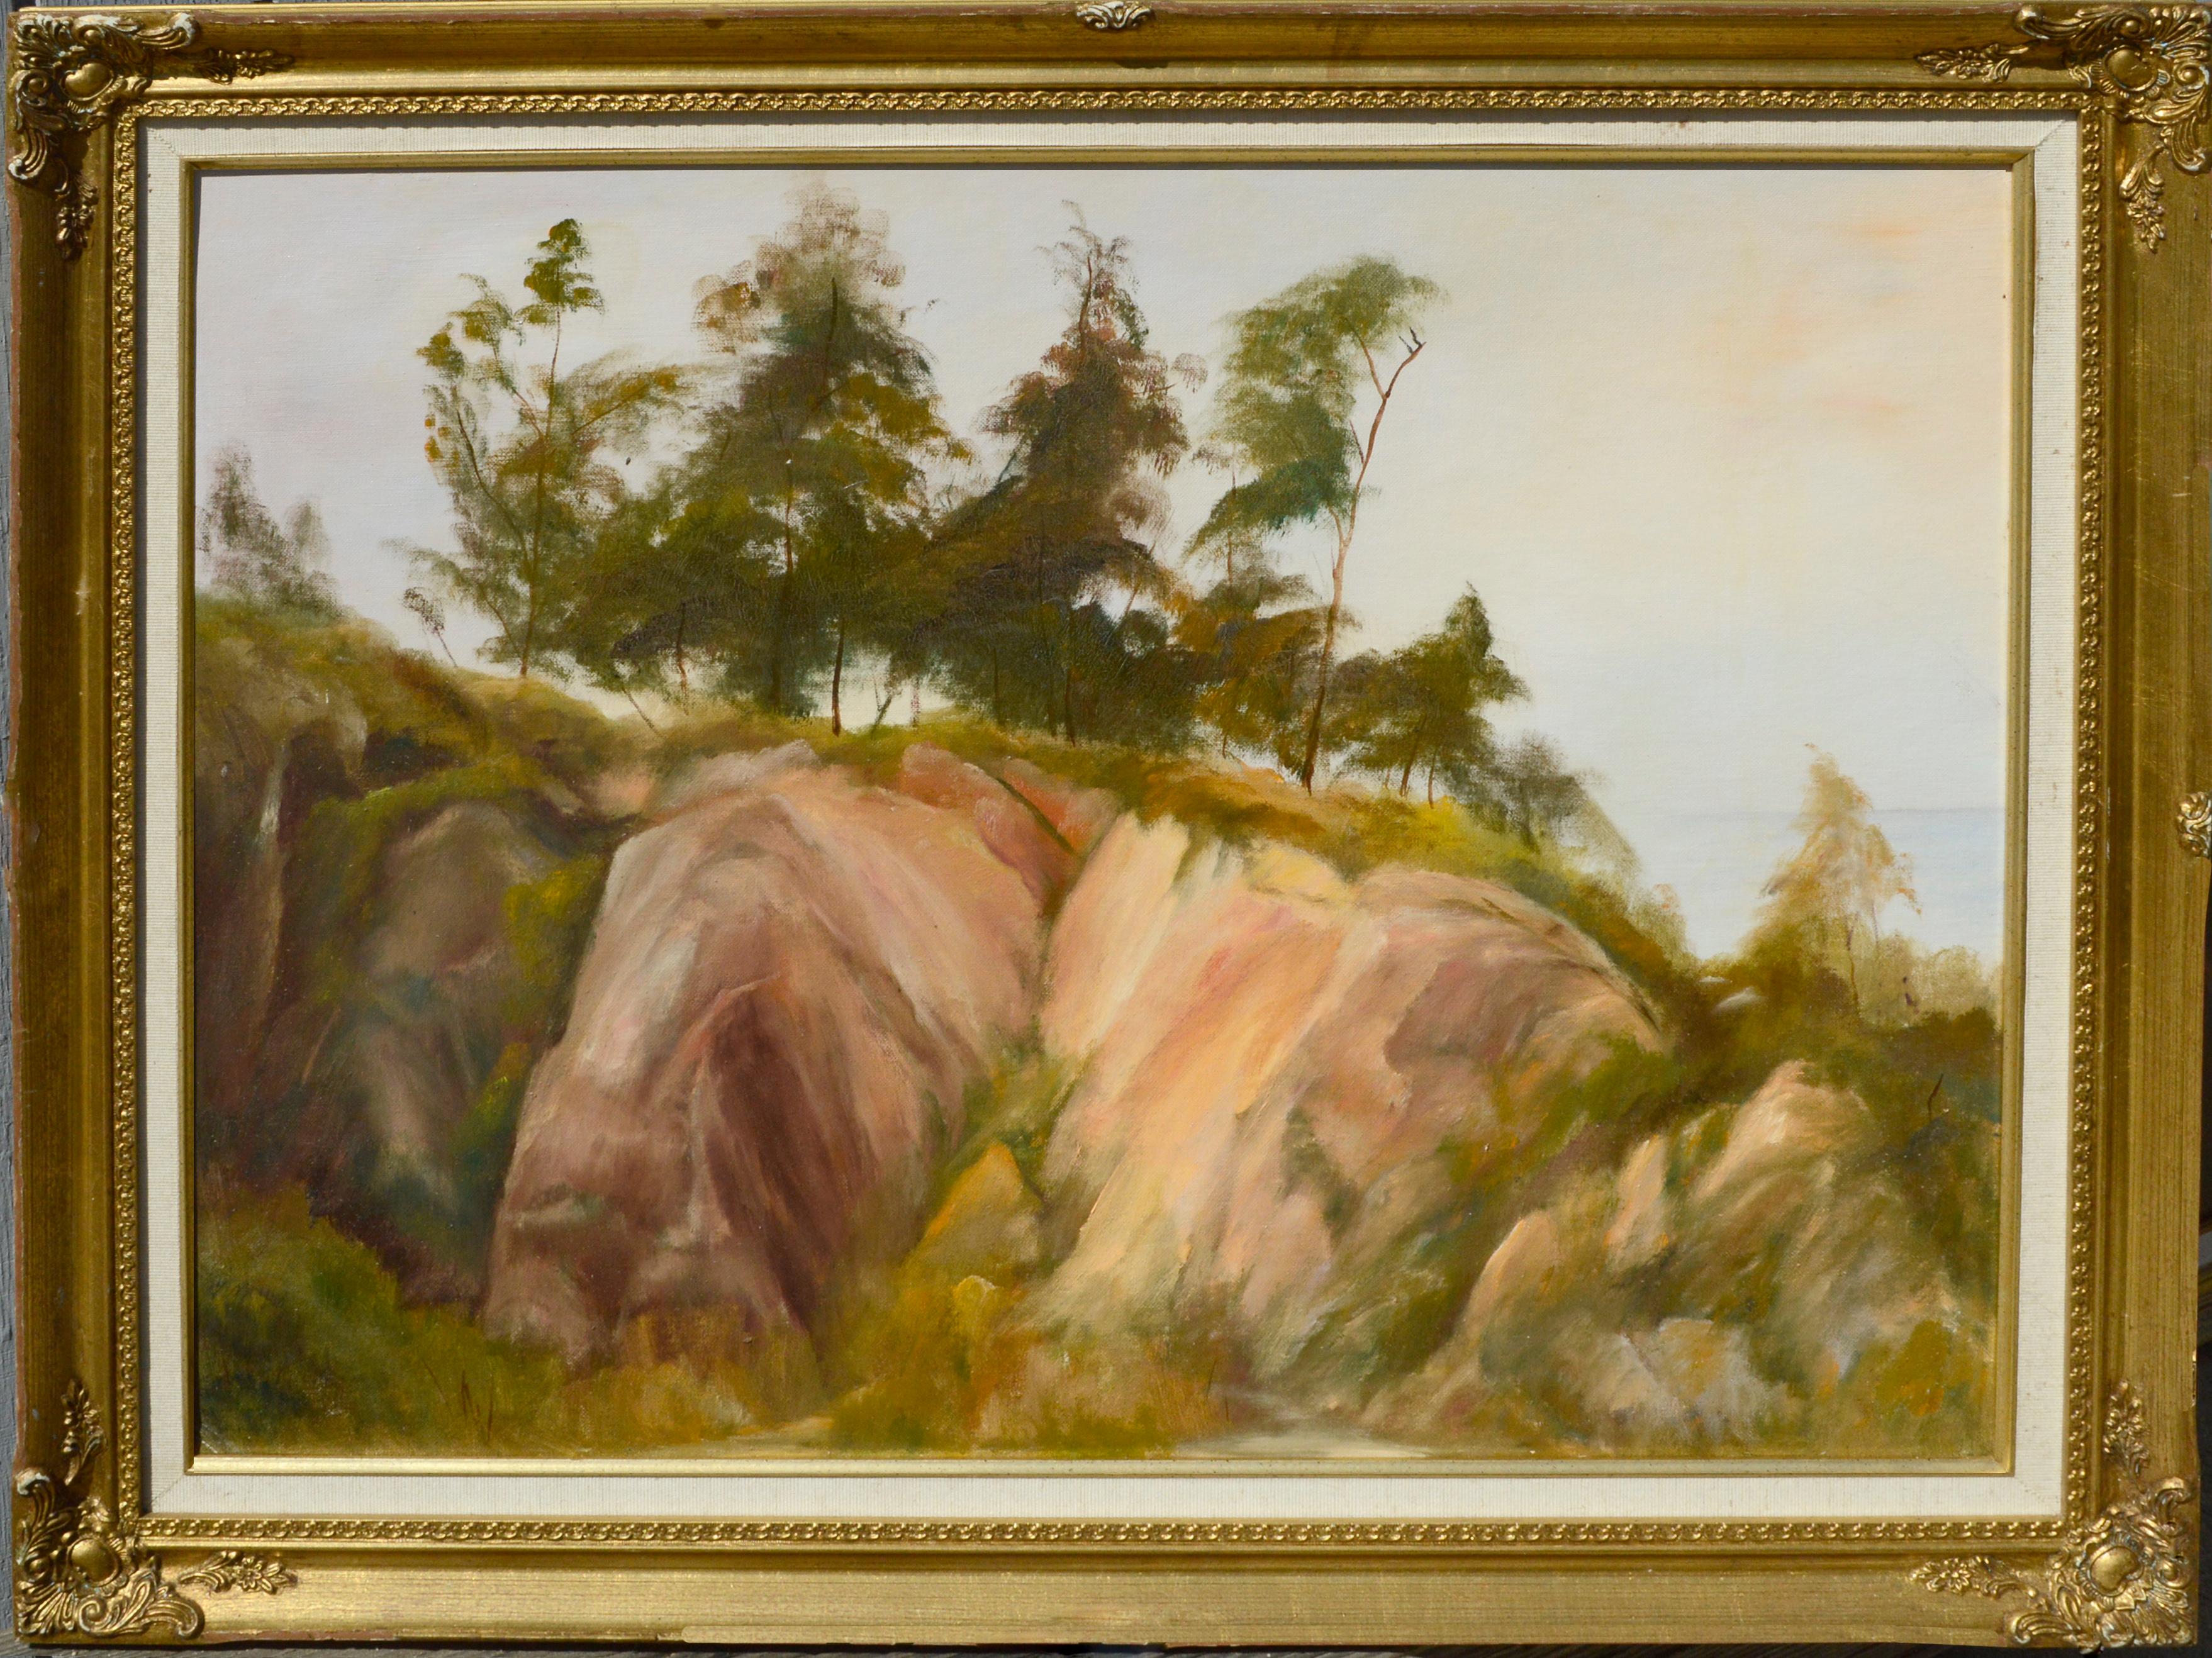 Landscape Painting Kenneth Lucas - The Trees at the Top of the Big Sur Coastal Bluffs Landscape - Huile sur panneau d'artiste 